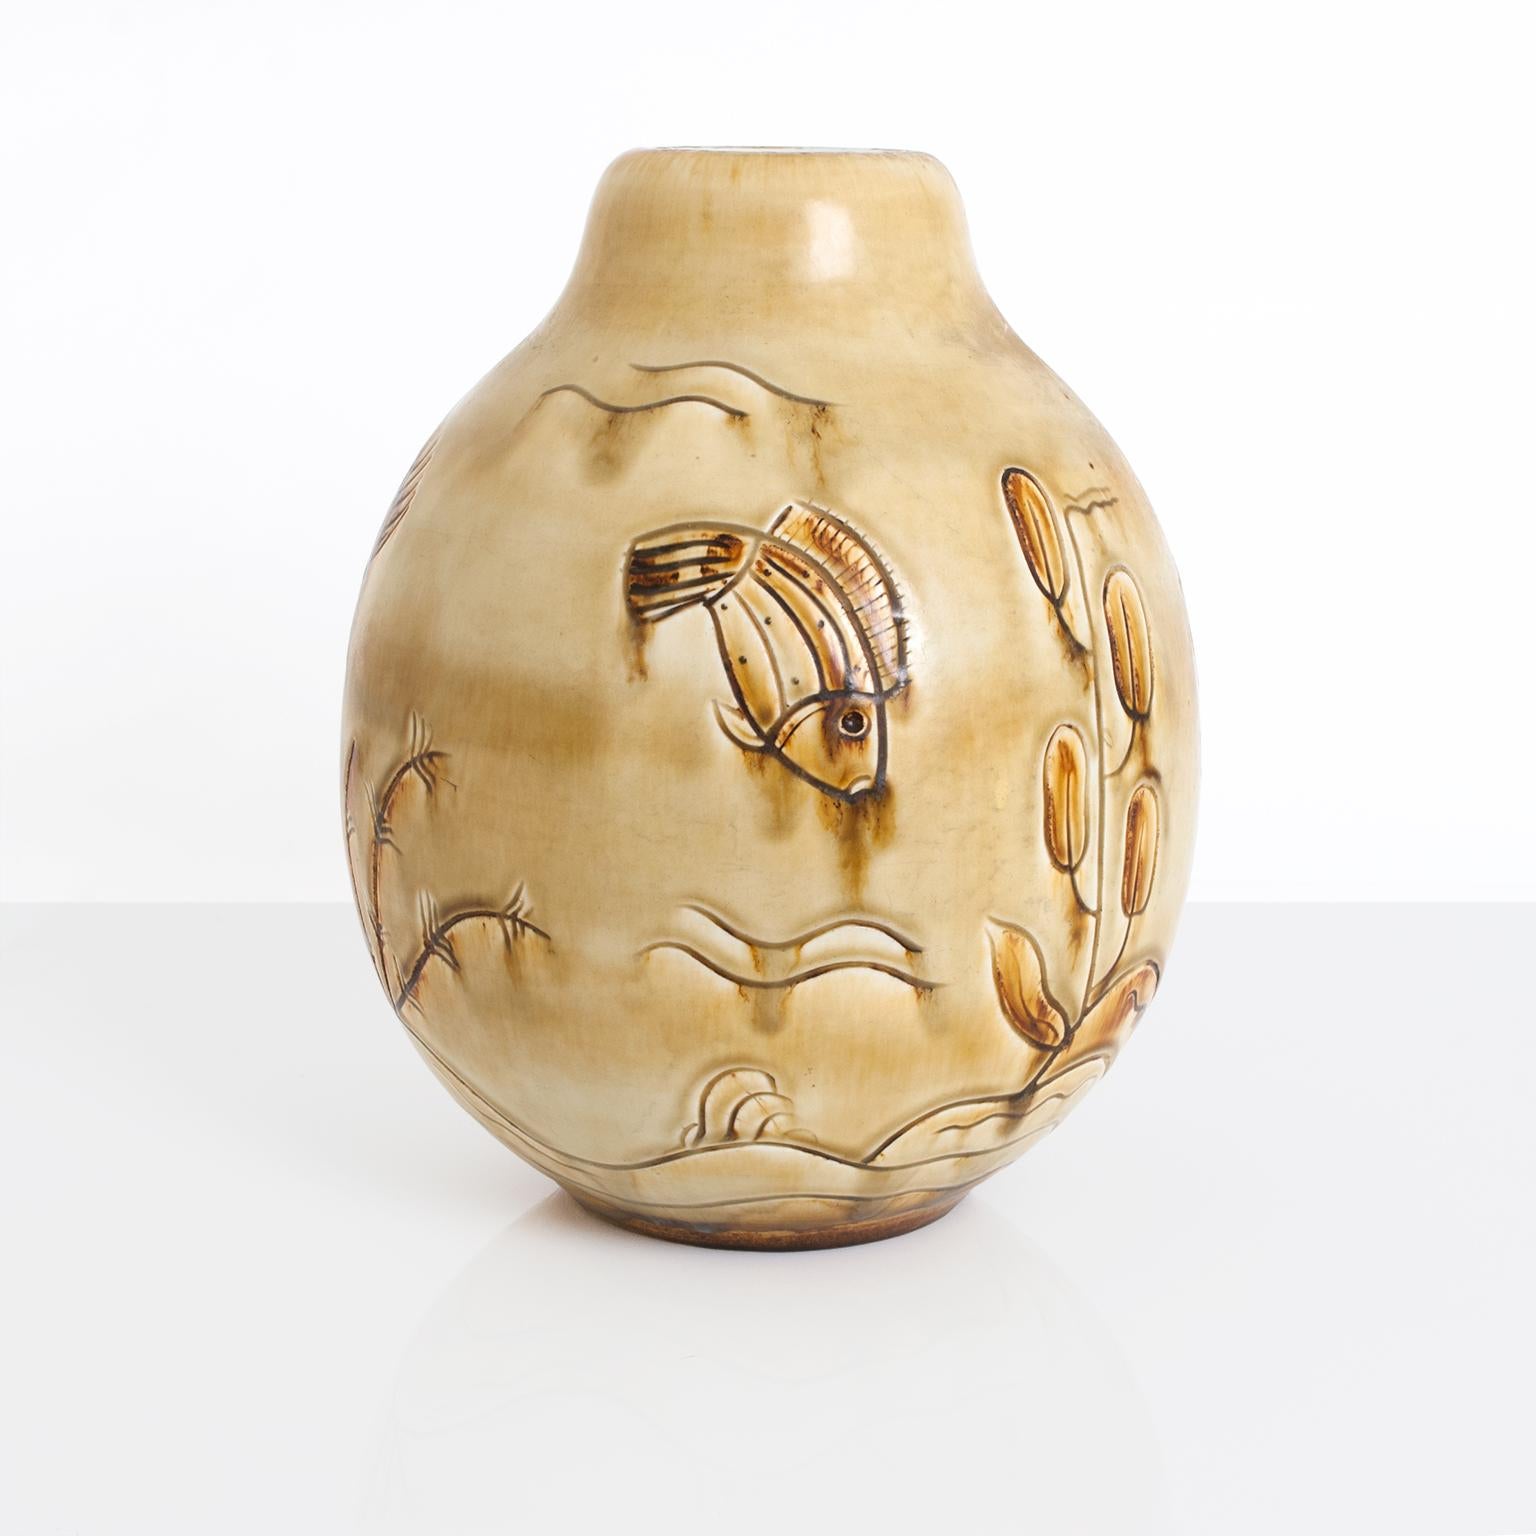 Große skandinavisch-moderne Art-déco-Vase aus Keramik von Gertrud Lonegren für Rorstrand. Diese Vase stellt eine Unterwasserszene mit verschiedenen Fischen und Pflanzen dar. Ihre Werke sind bekannt für ihre strukturierten Oberflächen in Kombination